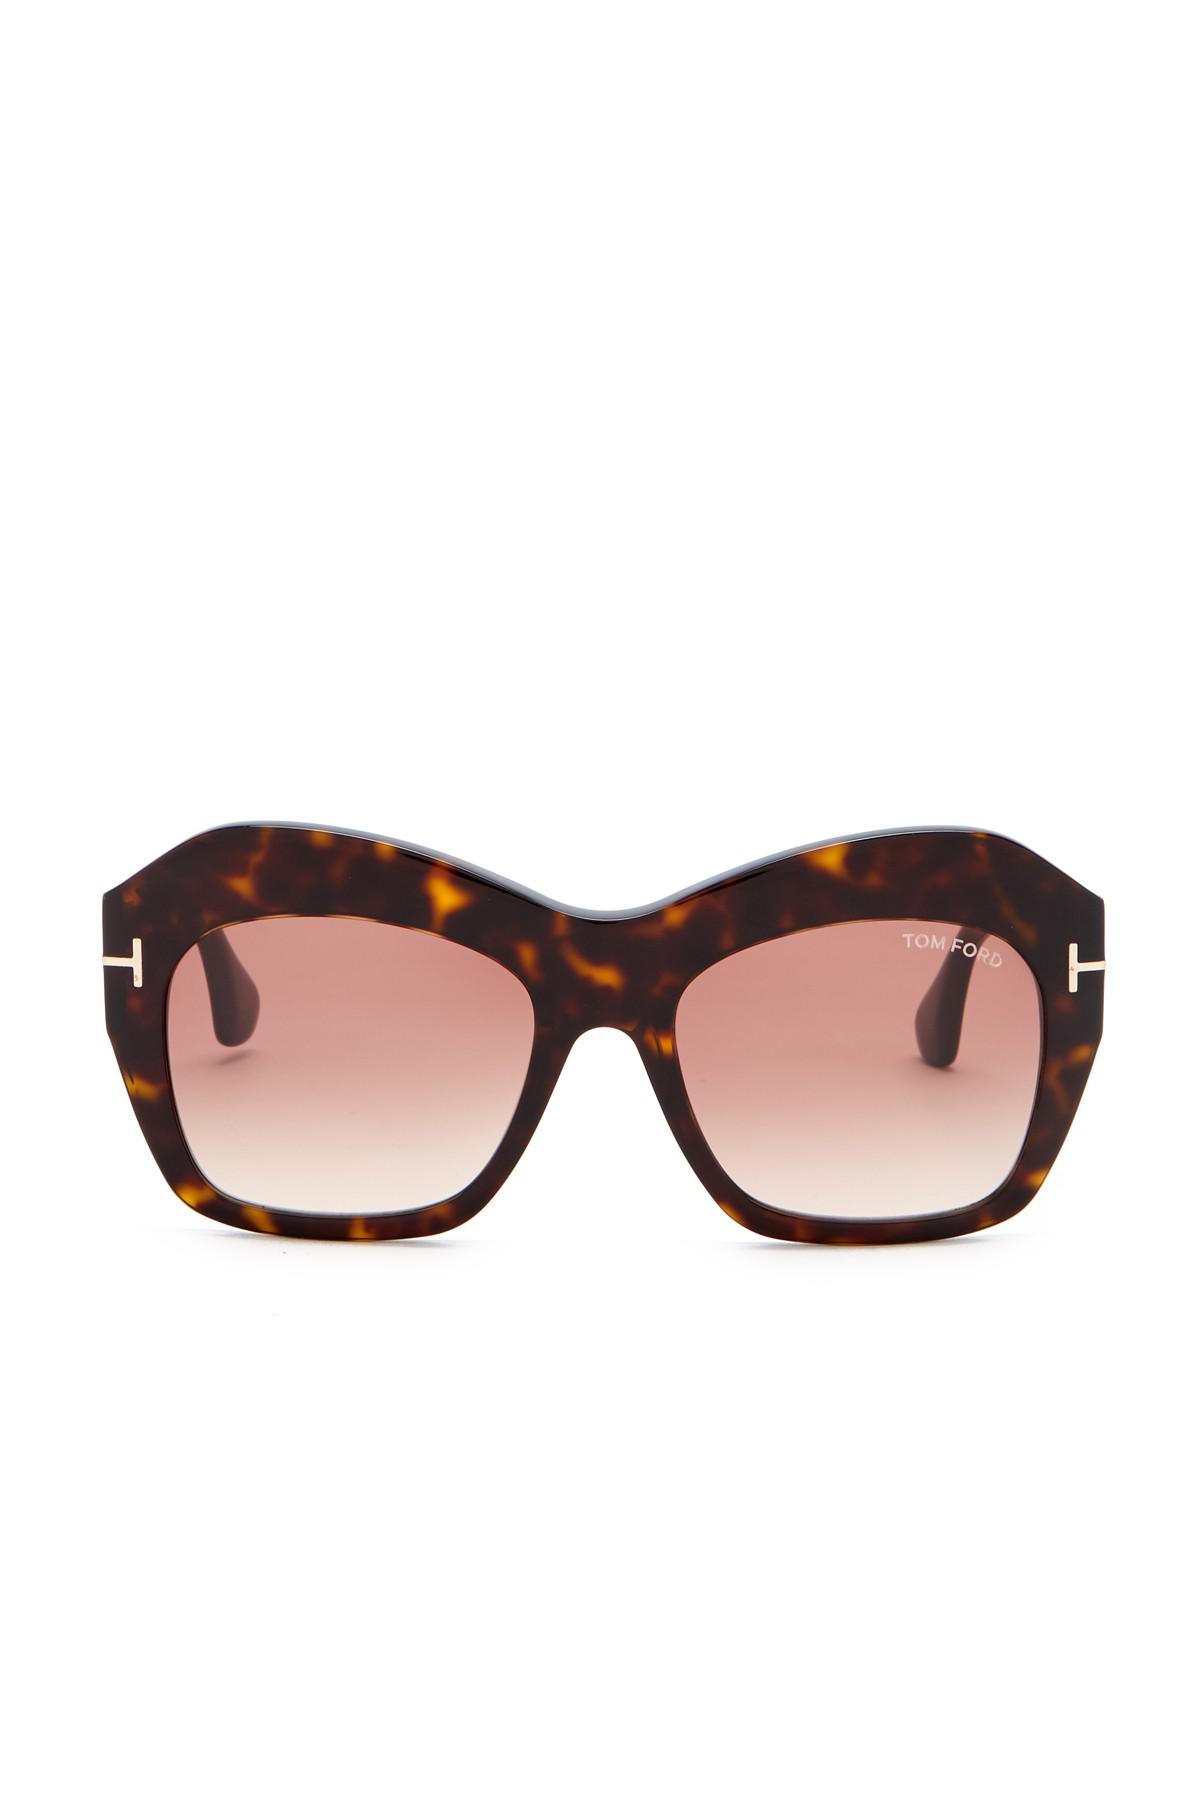 tom ford emmanuelle 54mm square sunglasses online